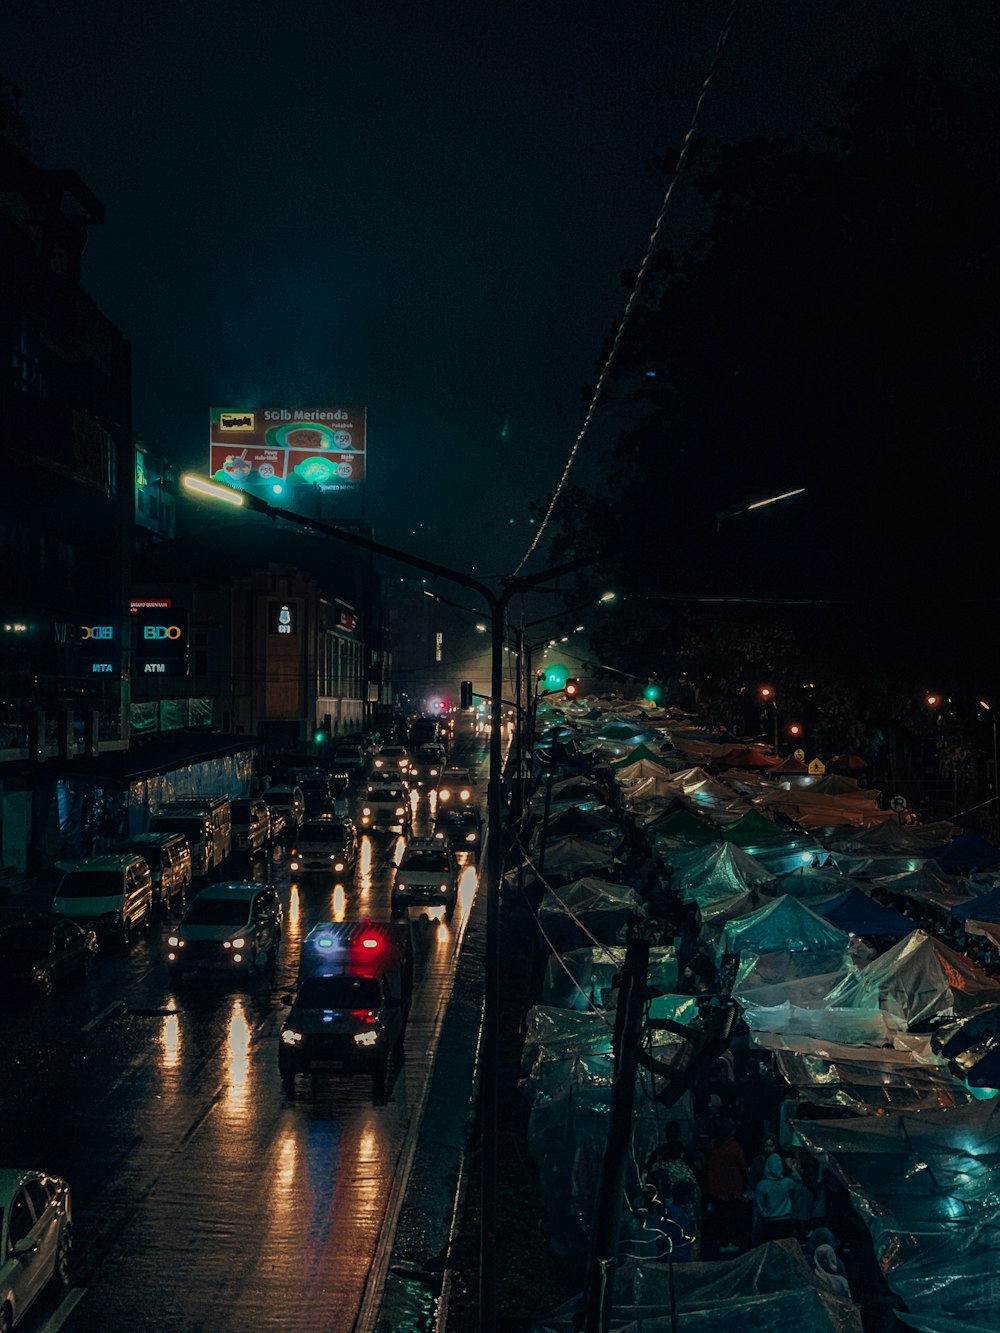 Stadt bei Nacht